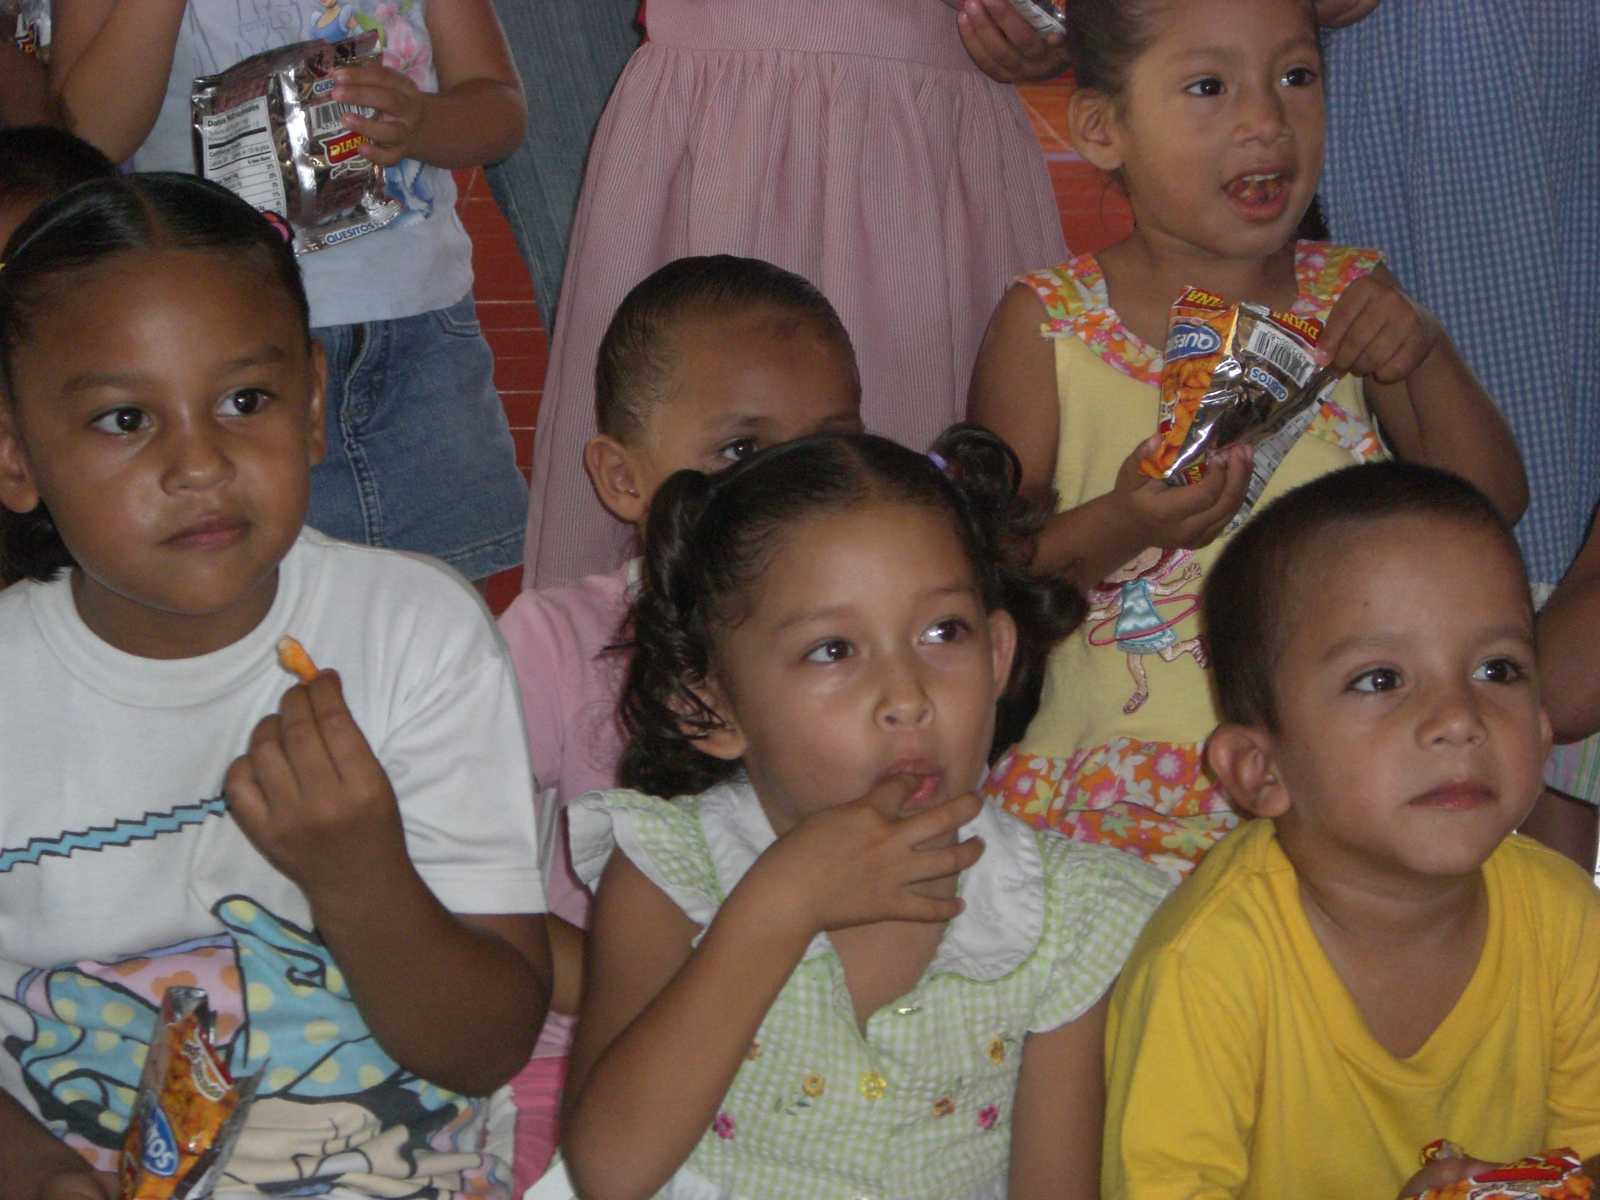 Project NPH - Nuestros Pequeños Hermanos in El Salvador